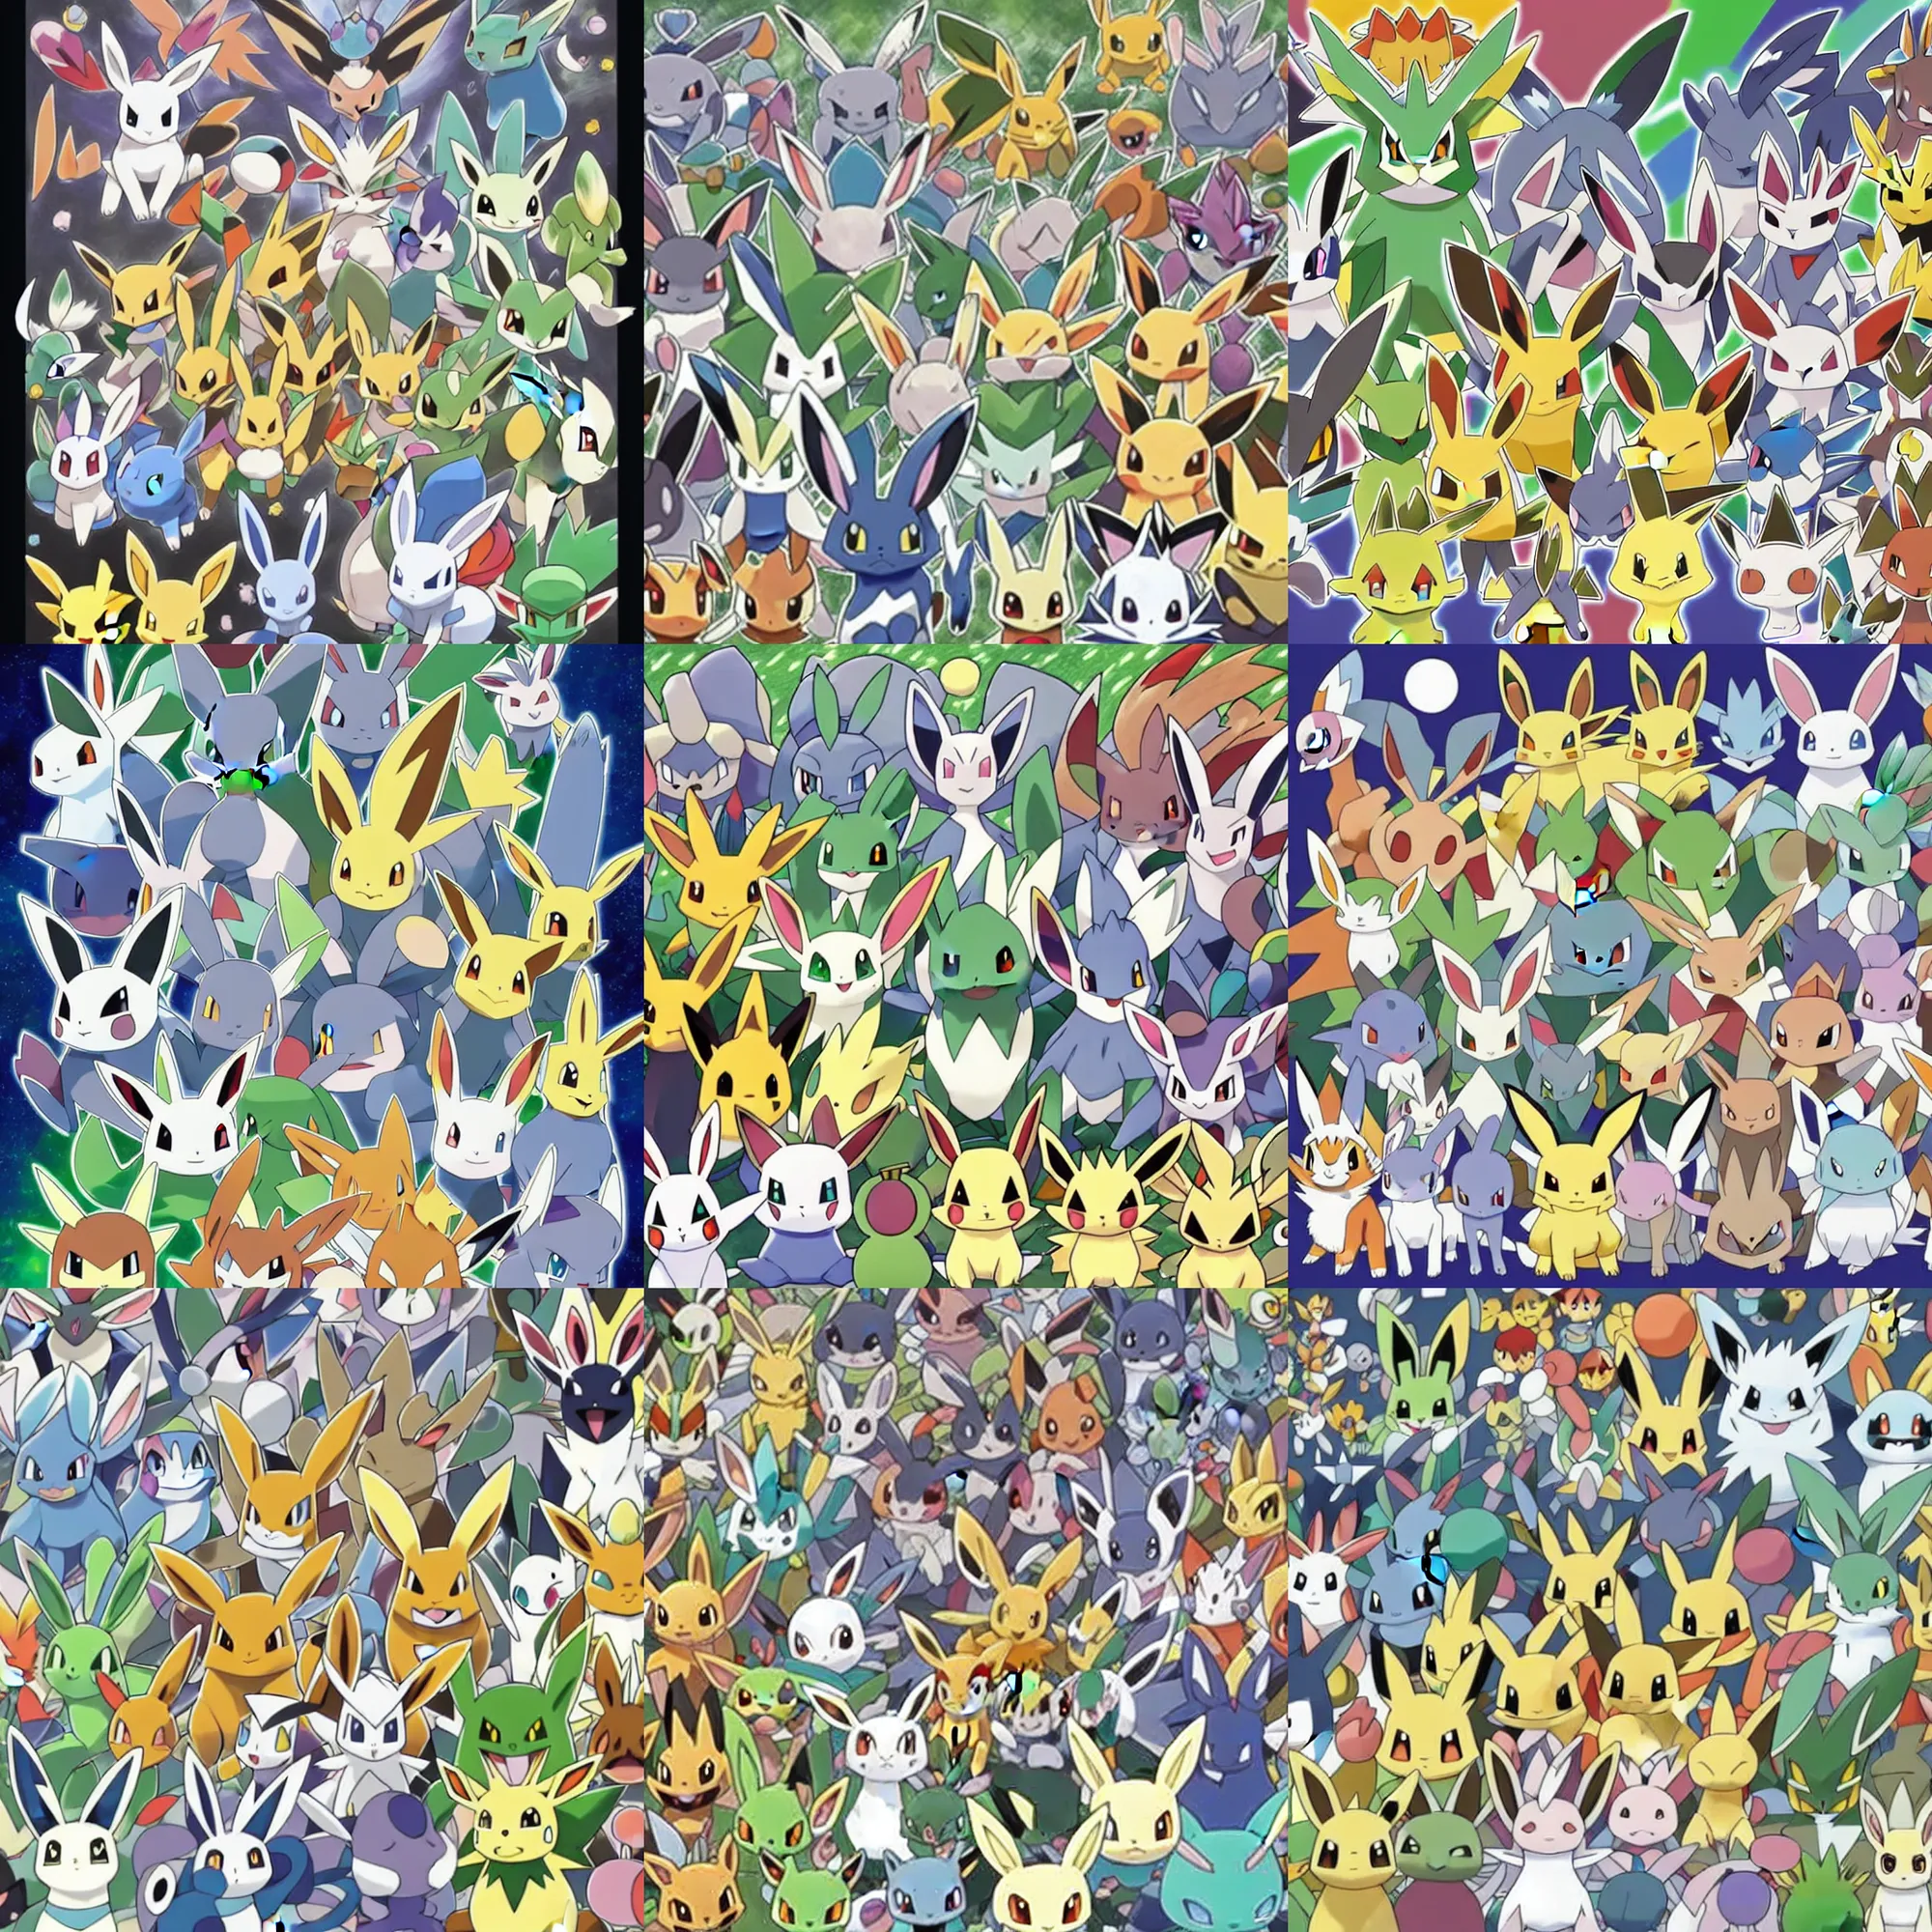 Prompt: official art of a symmetrical crowd of Pokémon, by Ken Sugimori and Junichi Masuda, whitespace, Bulbapedia, Pokémon logo, eevee jolteon flareon umbreon espeon vaporeon sylveon leafeon